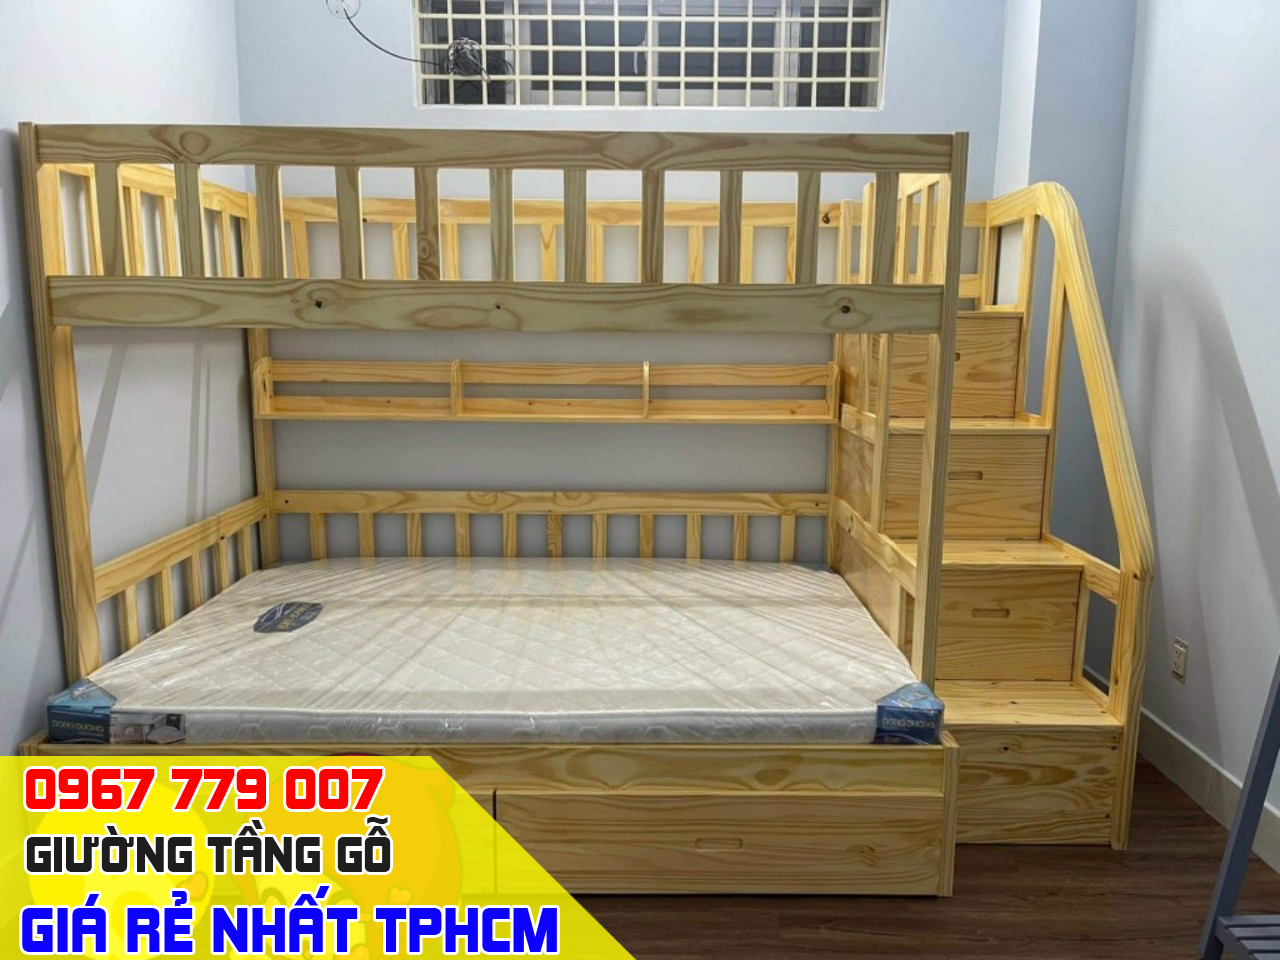 CH bán giường tầng trẻ em giá rẻ uy tín nhất Quận Gò Vấp TPHCM 7